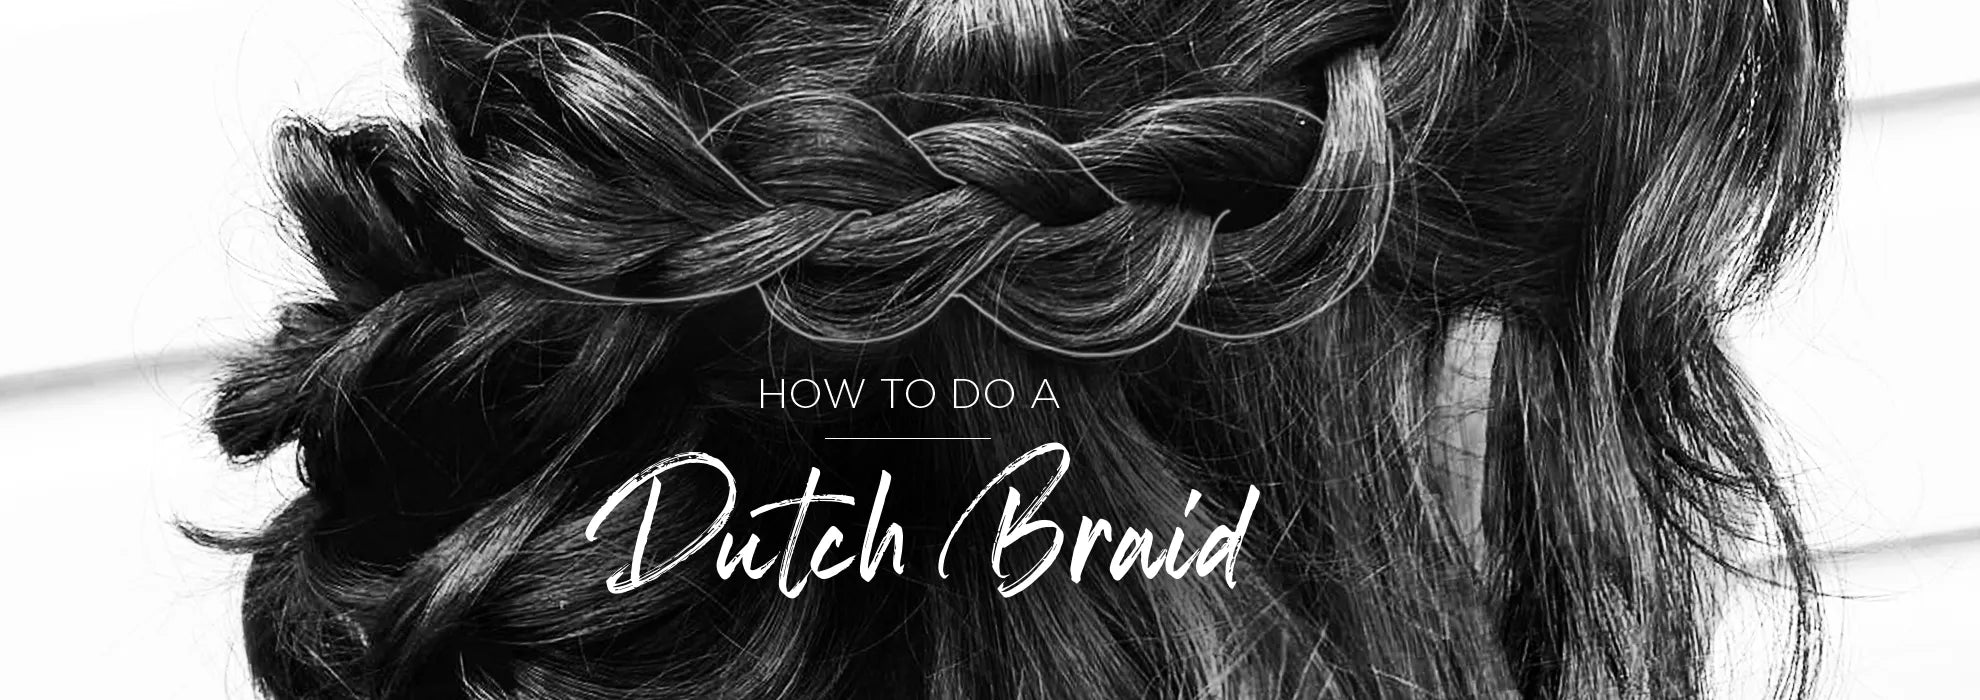 Hairstyle for curly hair: Dutch braid tutorial - Hair Romance